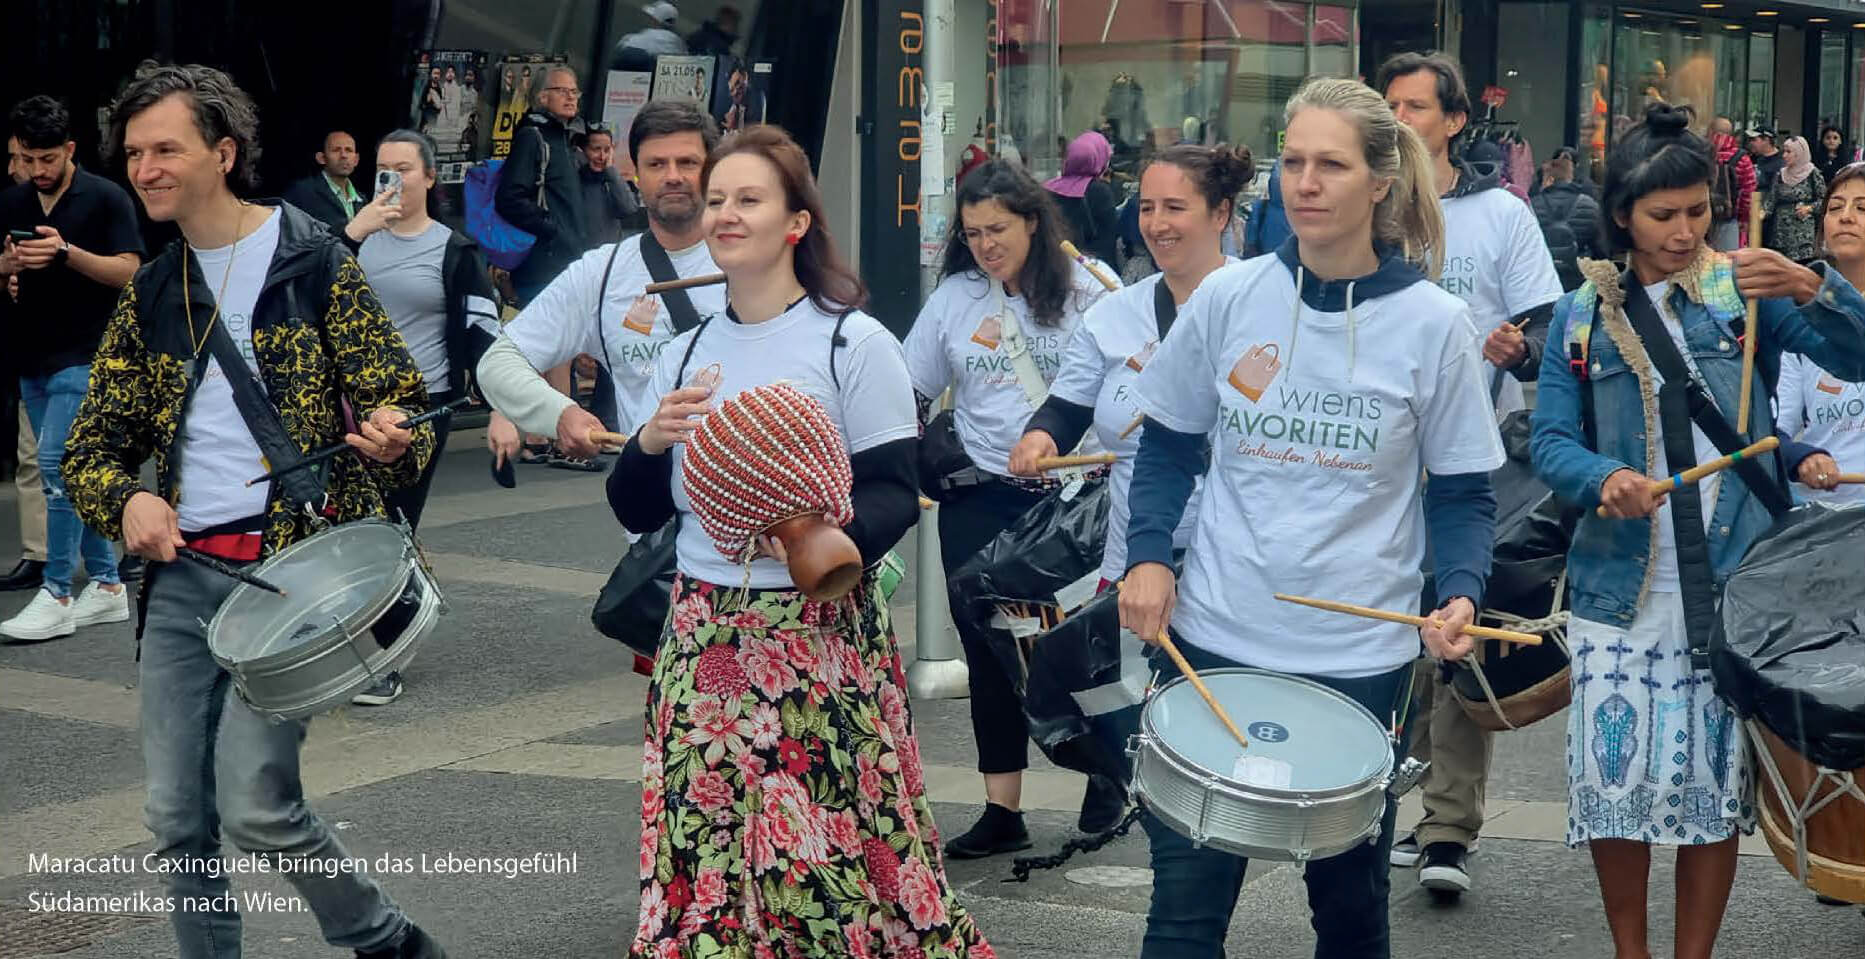 Eine Gruppe Trommler mit Wiens Favoriten T-Shirts in der Favoritenstrasse